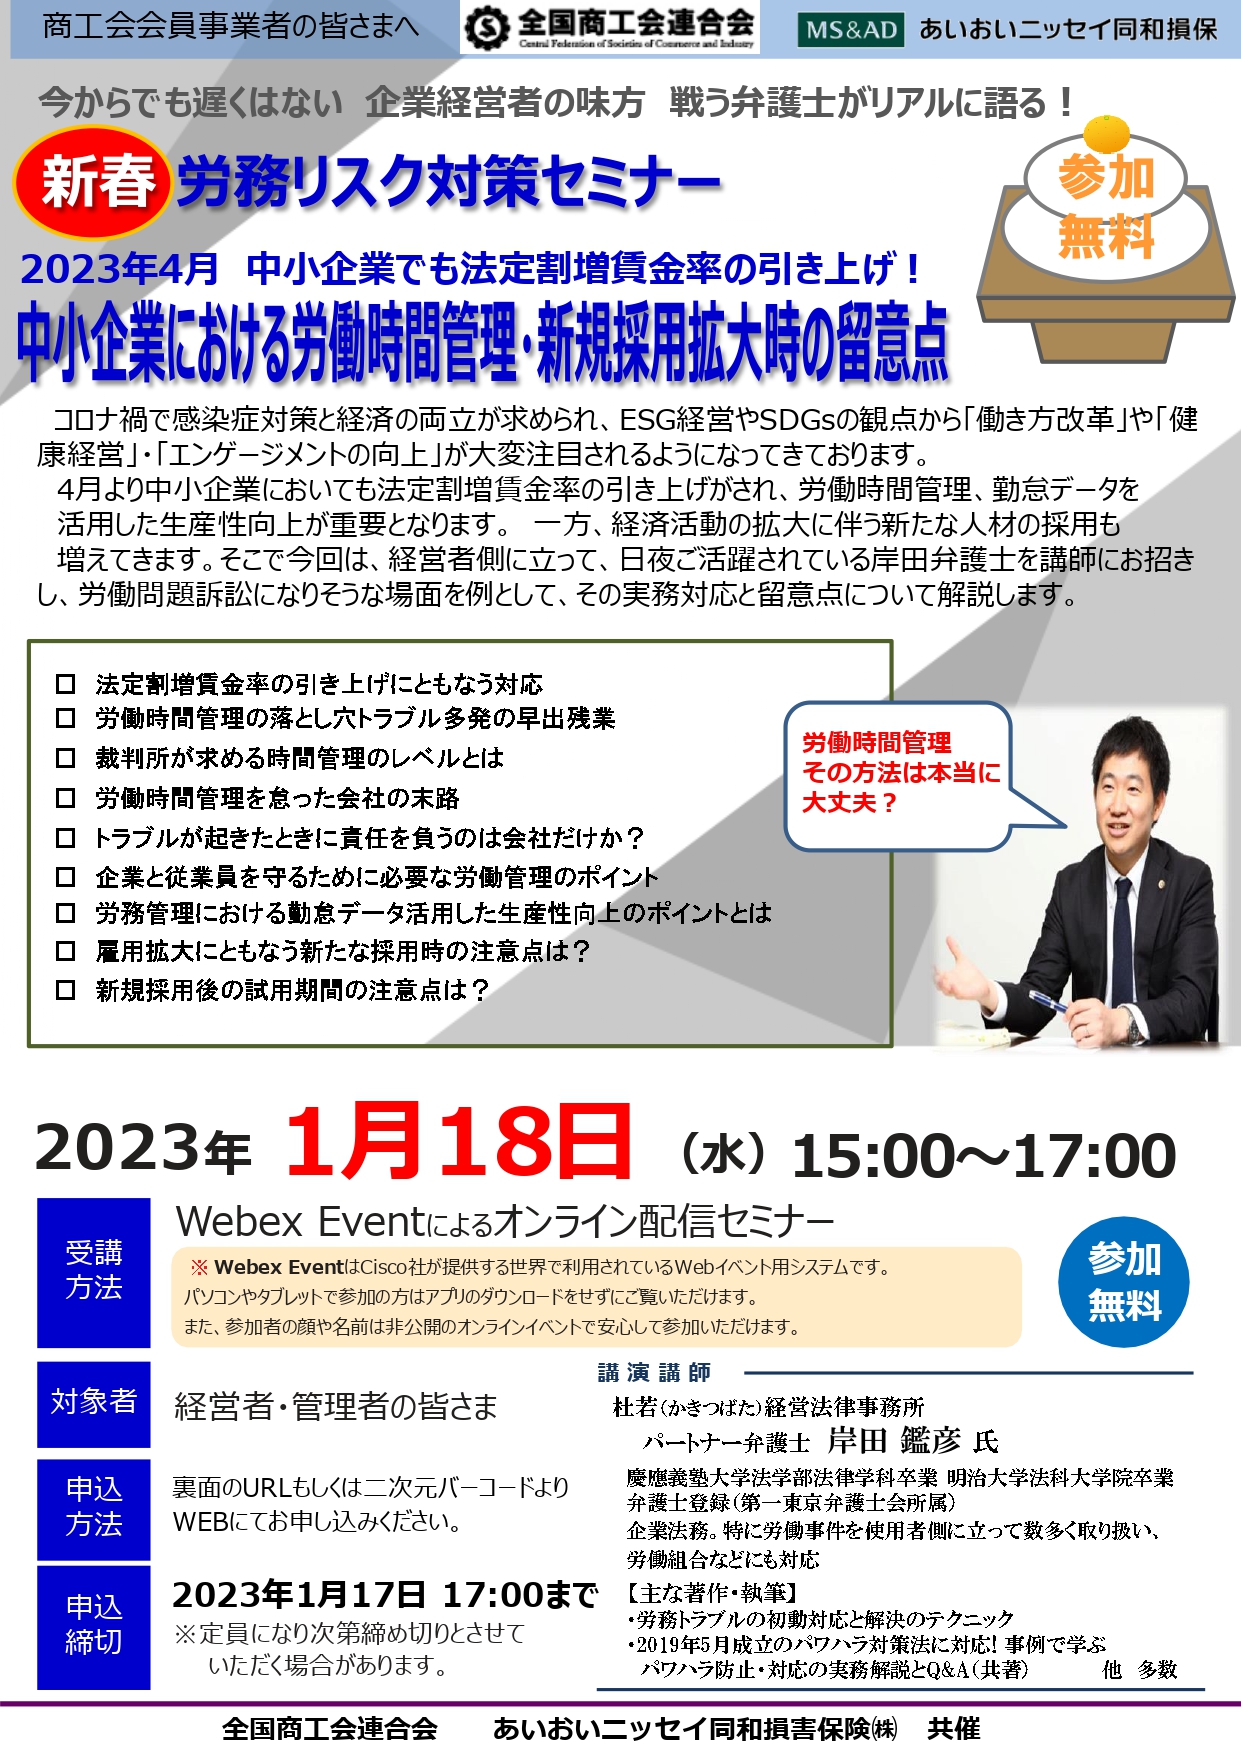 【1月18日】「労務リスク対策セミナー」の開催について